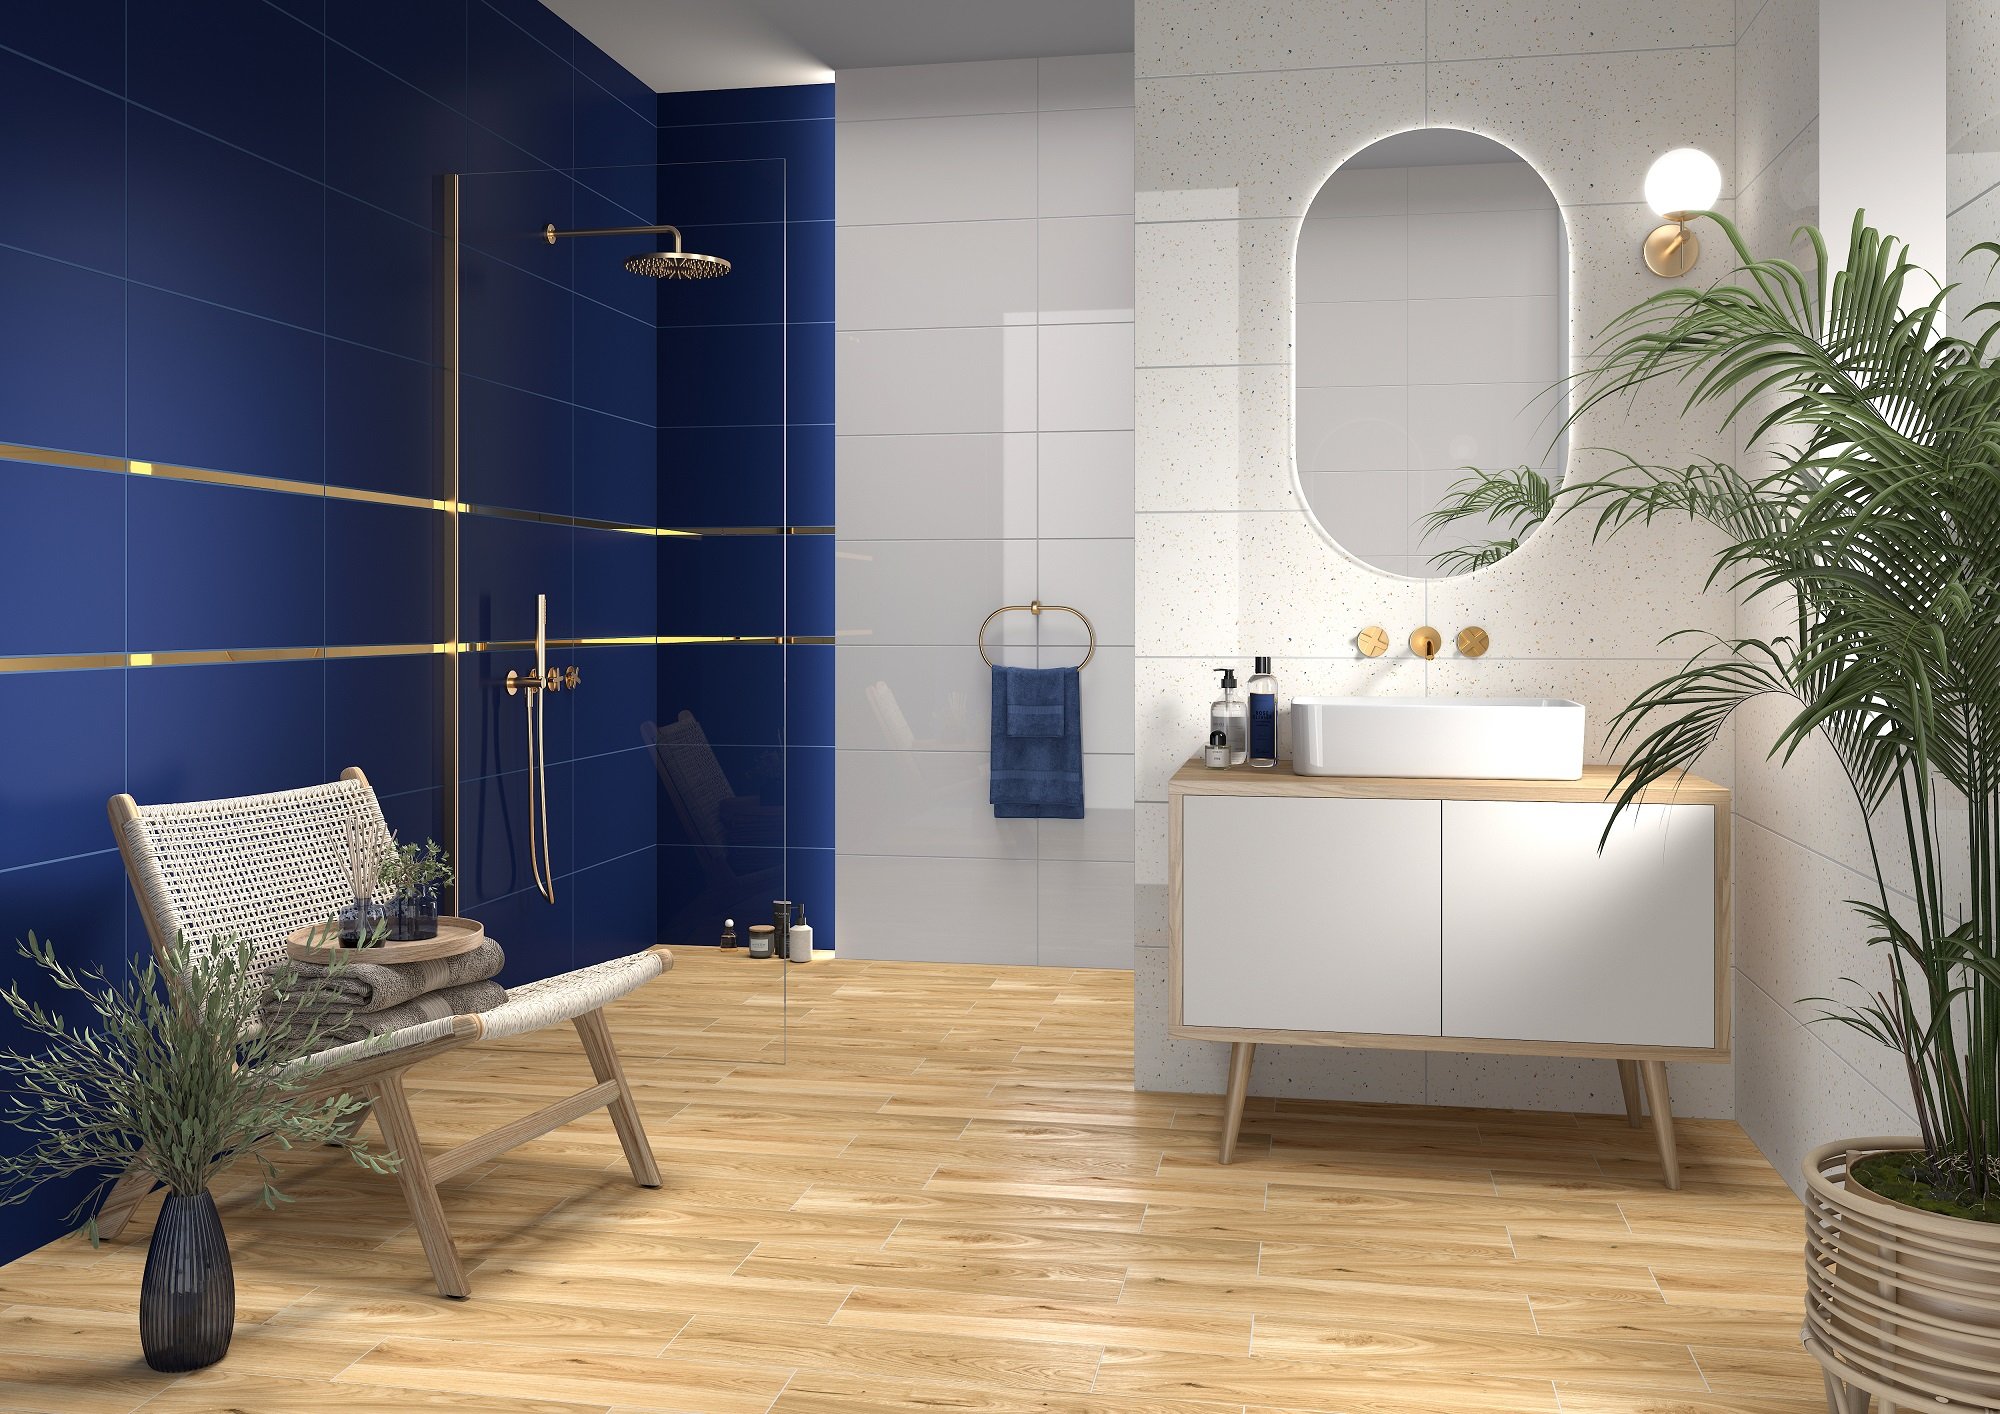 #Koupelna #Minimalistický styl #Moderní styl #bílá #modrá #Velký formát #Lesklý obklad #Matný obklad #350 - 500 Kč/m2 #Tubadzin #Astri